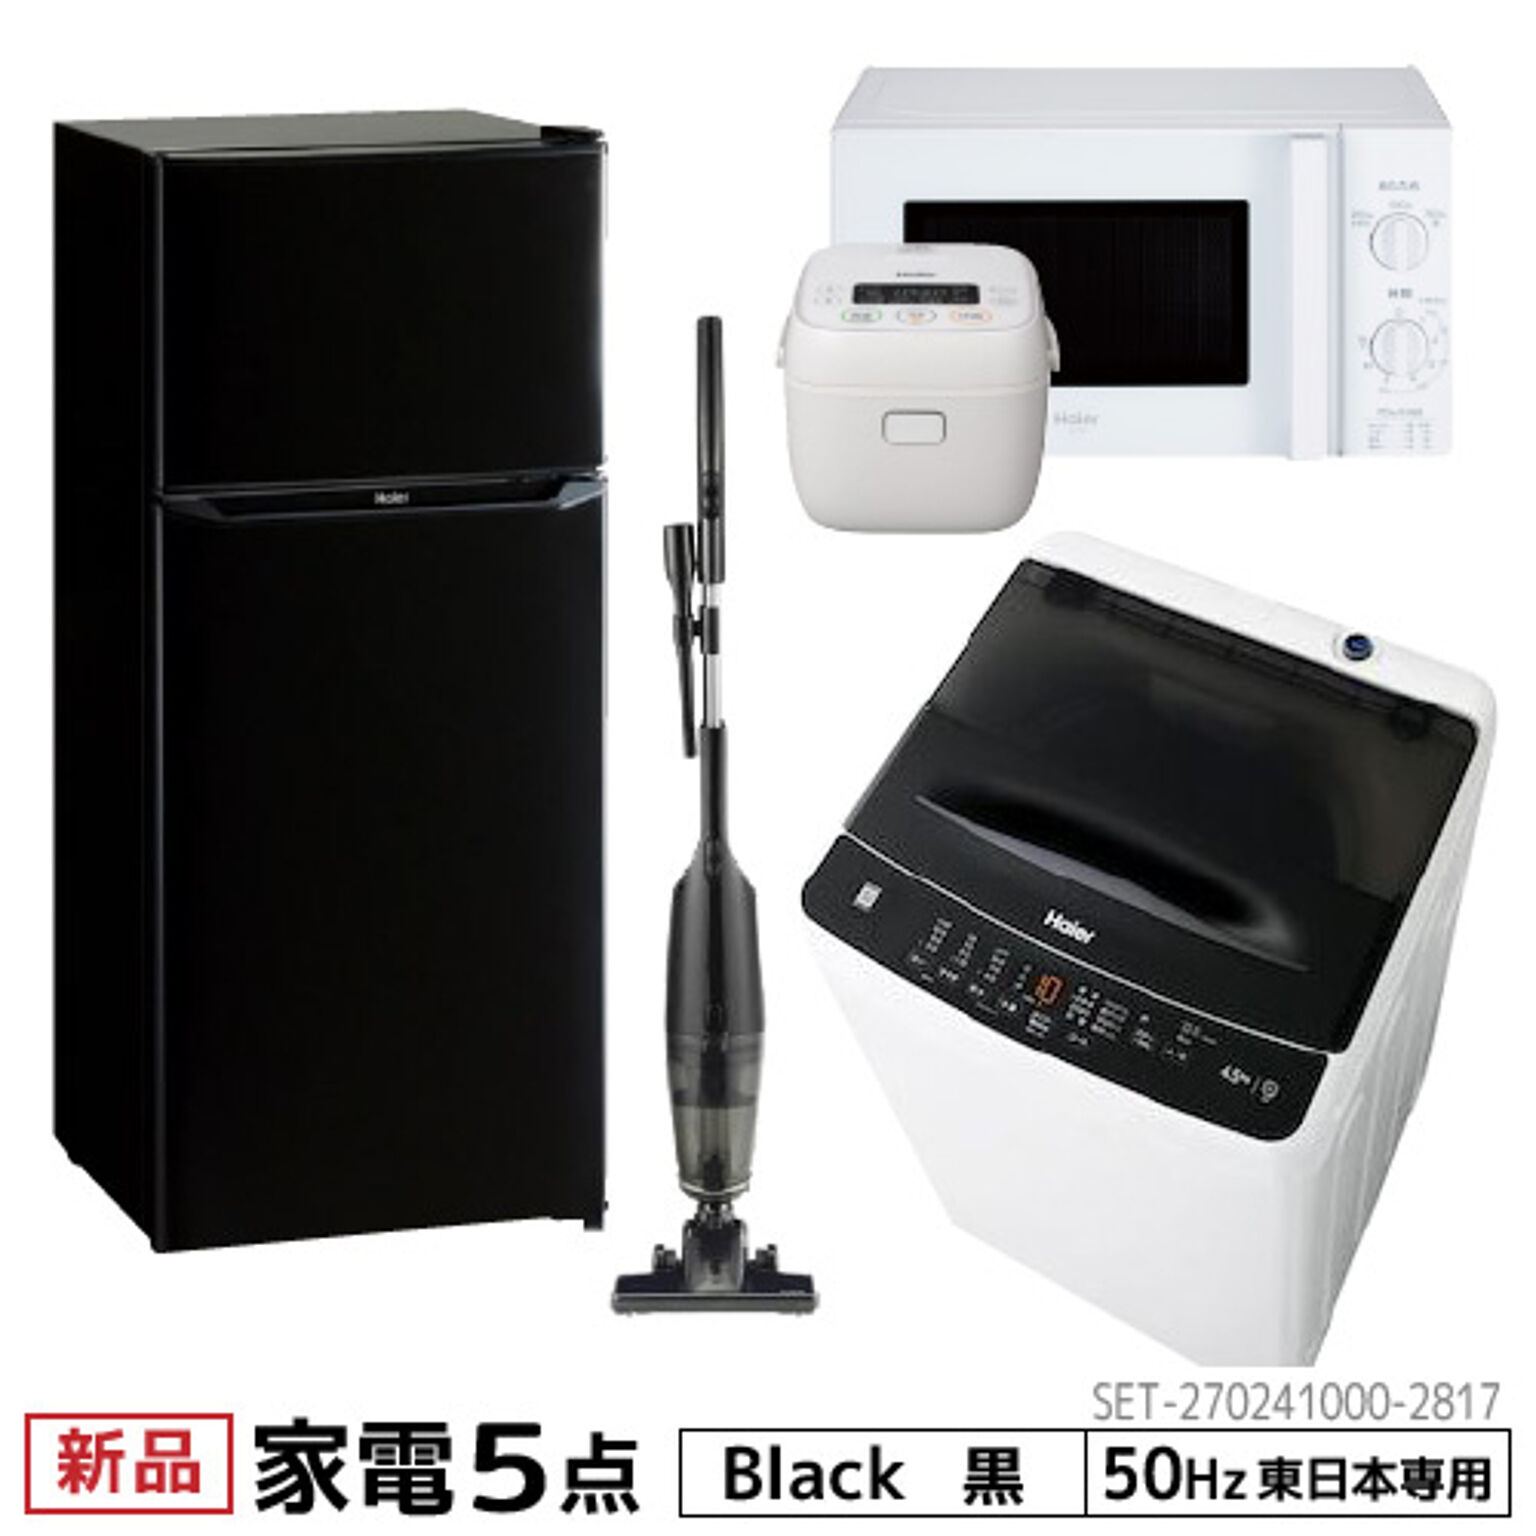 Haier 一人暮らし家電5点セット 東日本地域専用 2ドア冷蔵庫 130L 洗濯機4.5kg レンジ17L 炊飯器3合 クリーナー